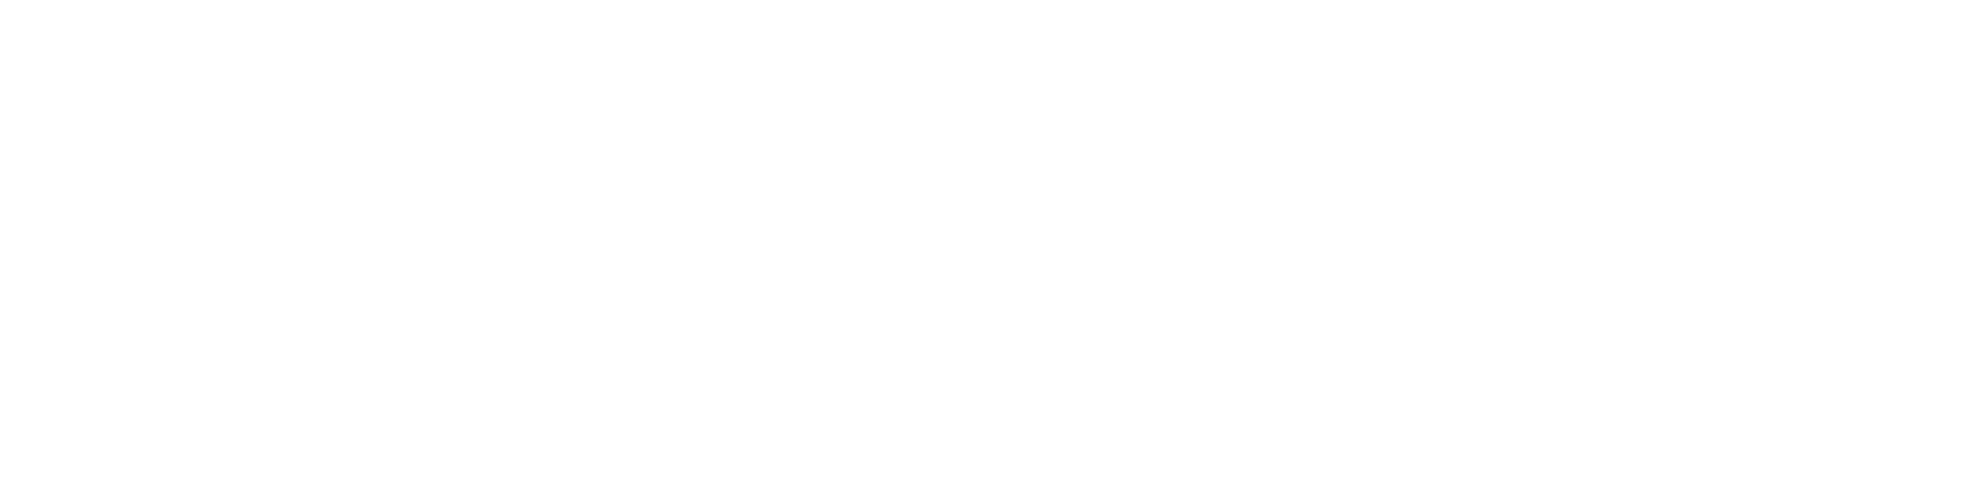 CDT Photonics logo mono